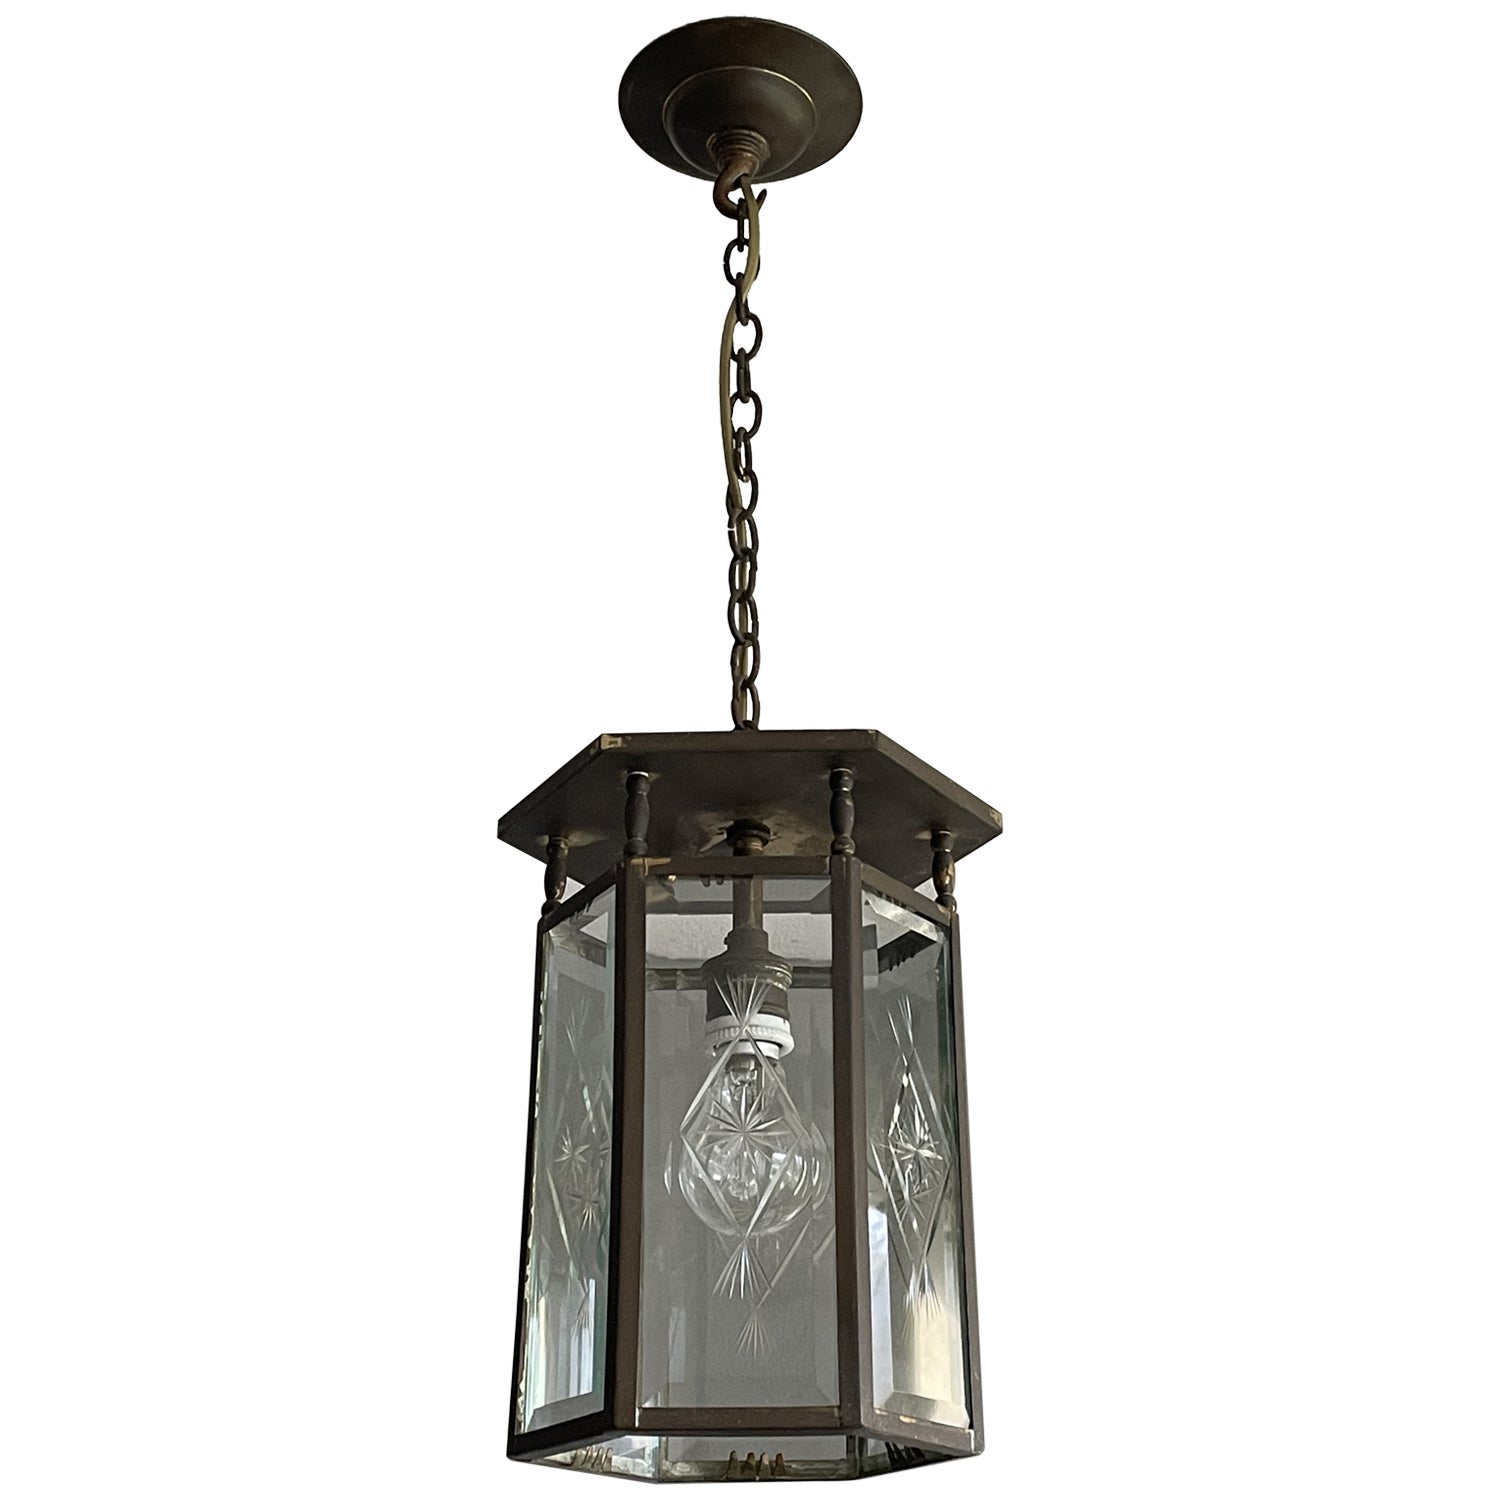 Élégante lanterne / lampe à suspension hollandaise Arts & Crafts en laiton et verre étoilé gravé